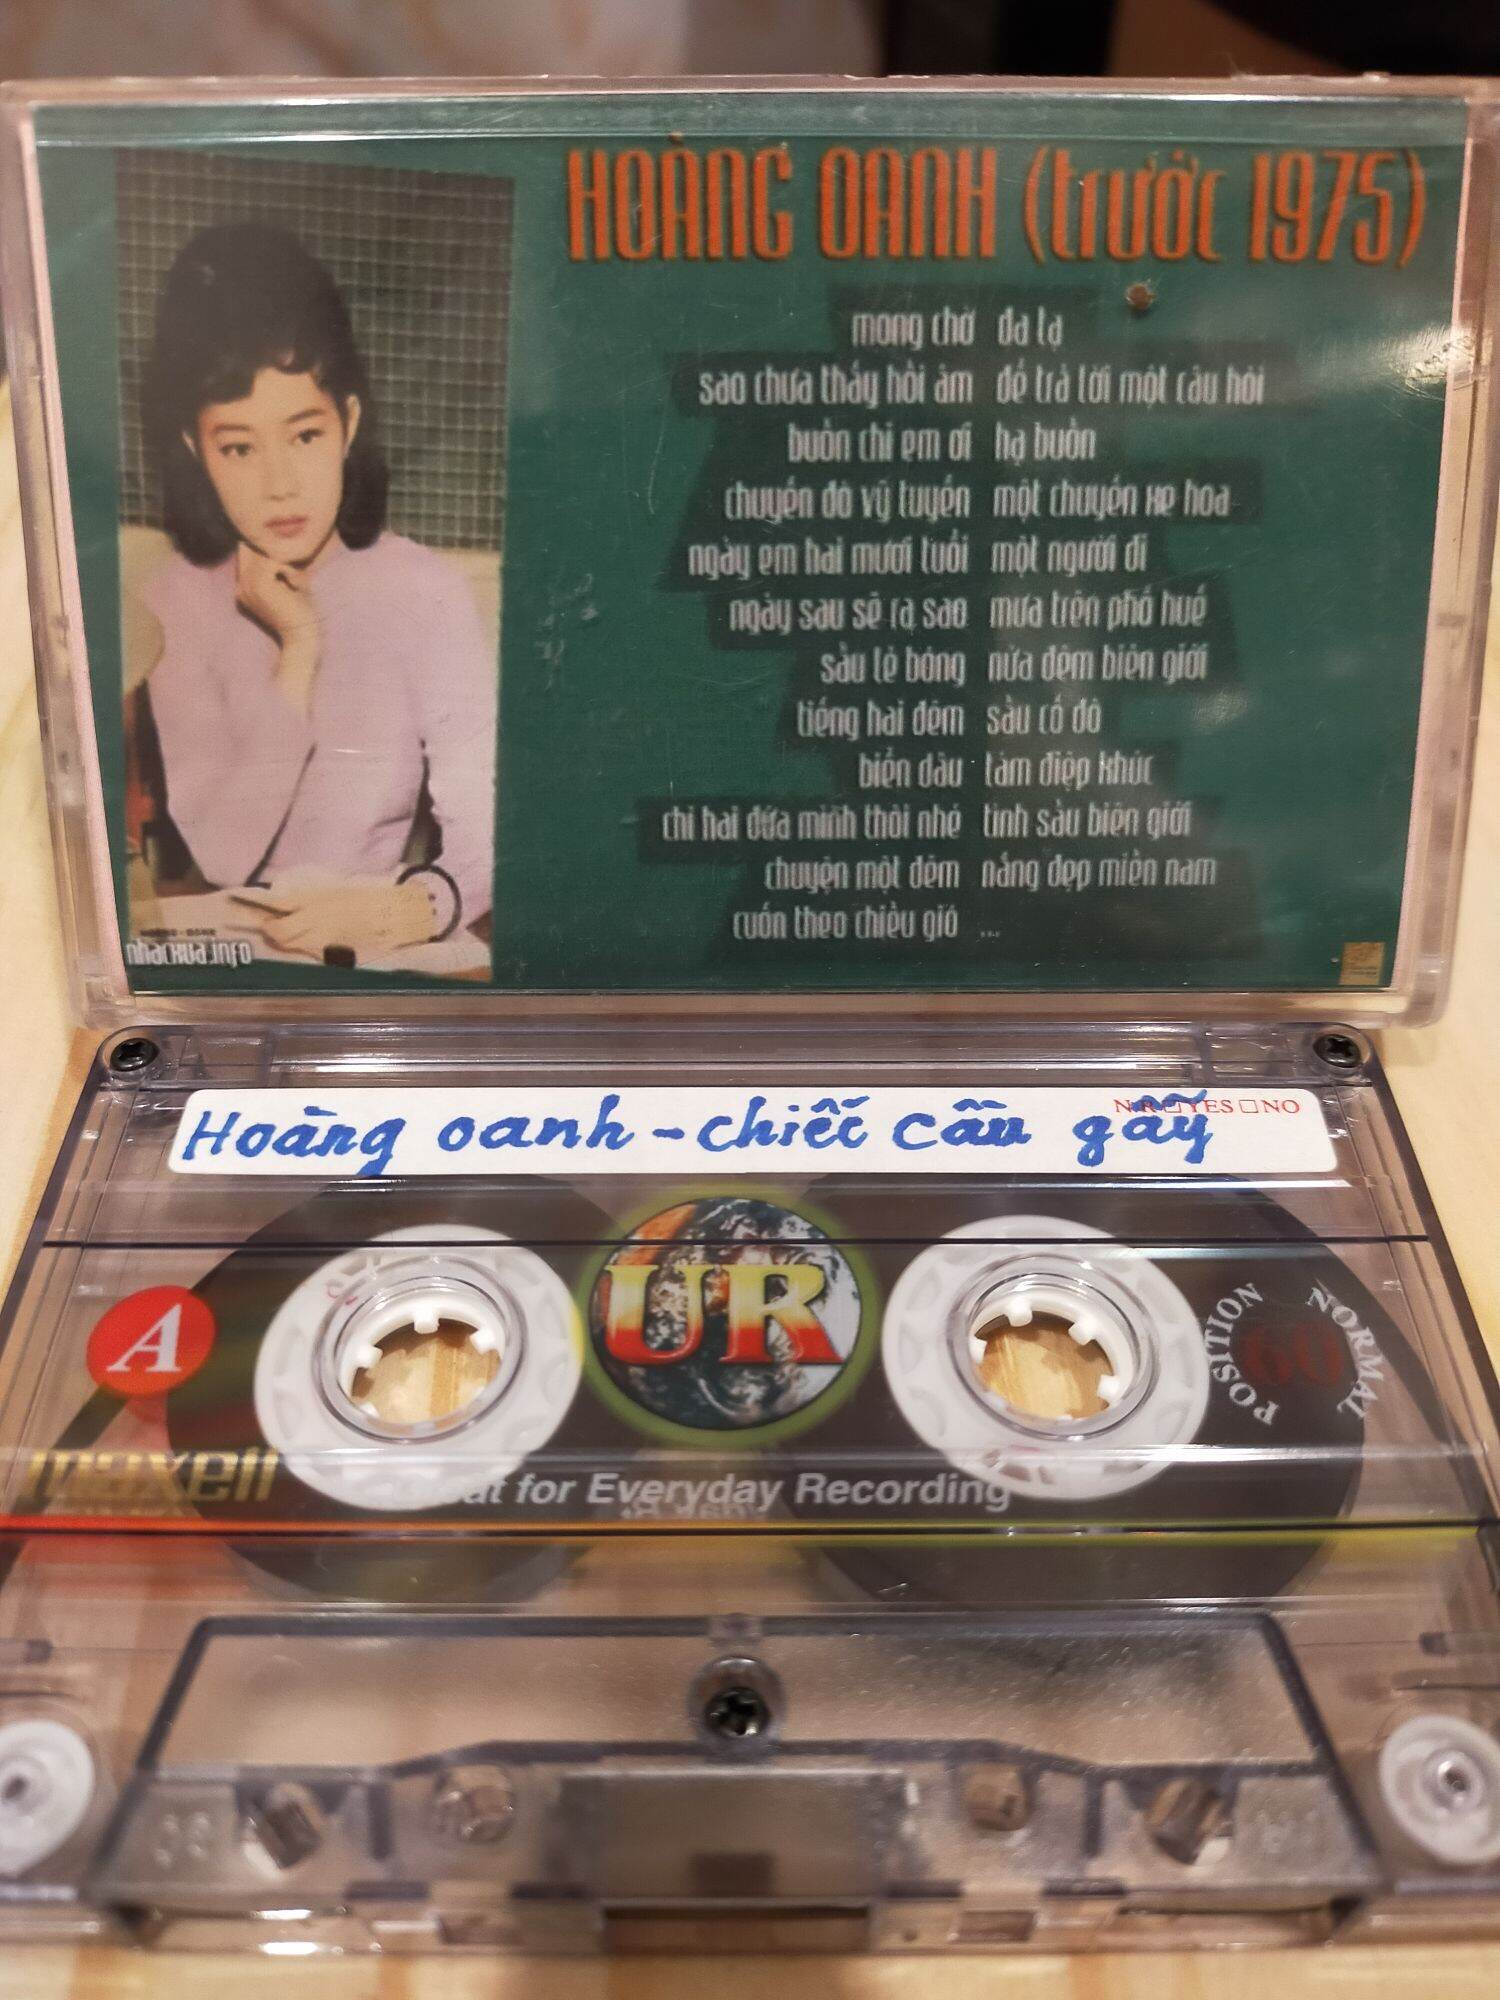 1 băng cassette maxell UR 90 phút tiếng hát hoàng oanh( lưu ý: đây là băng cũ